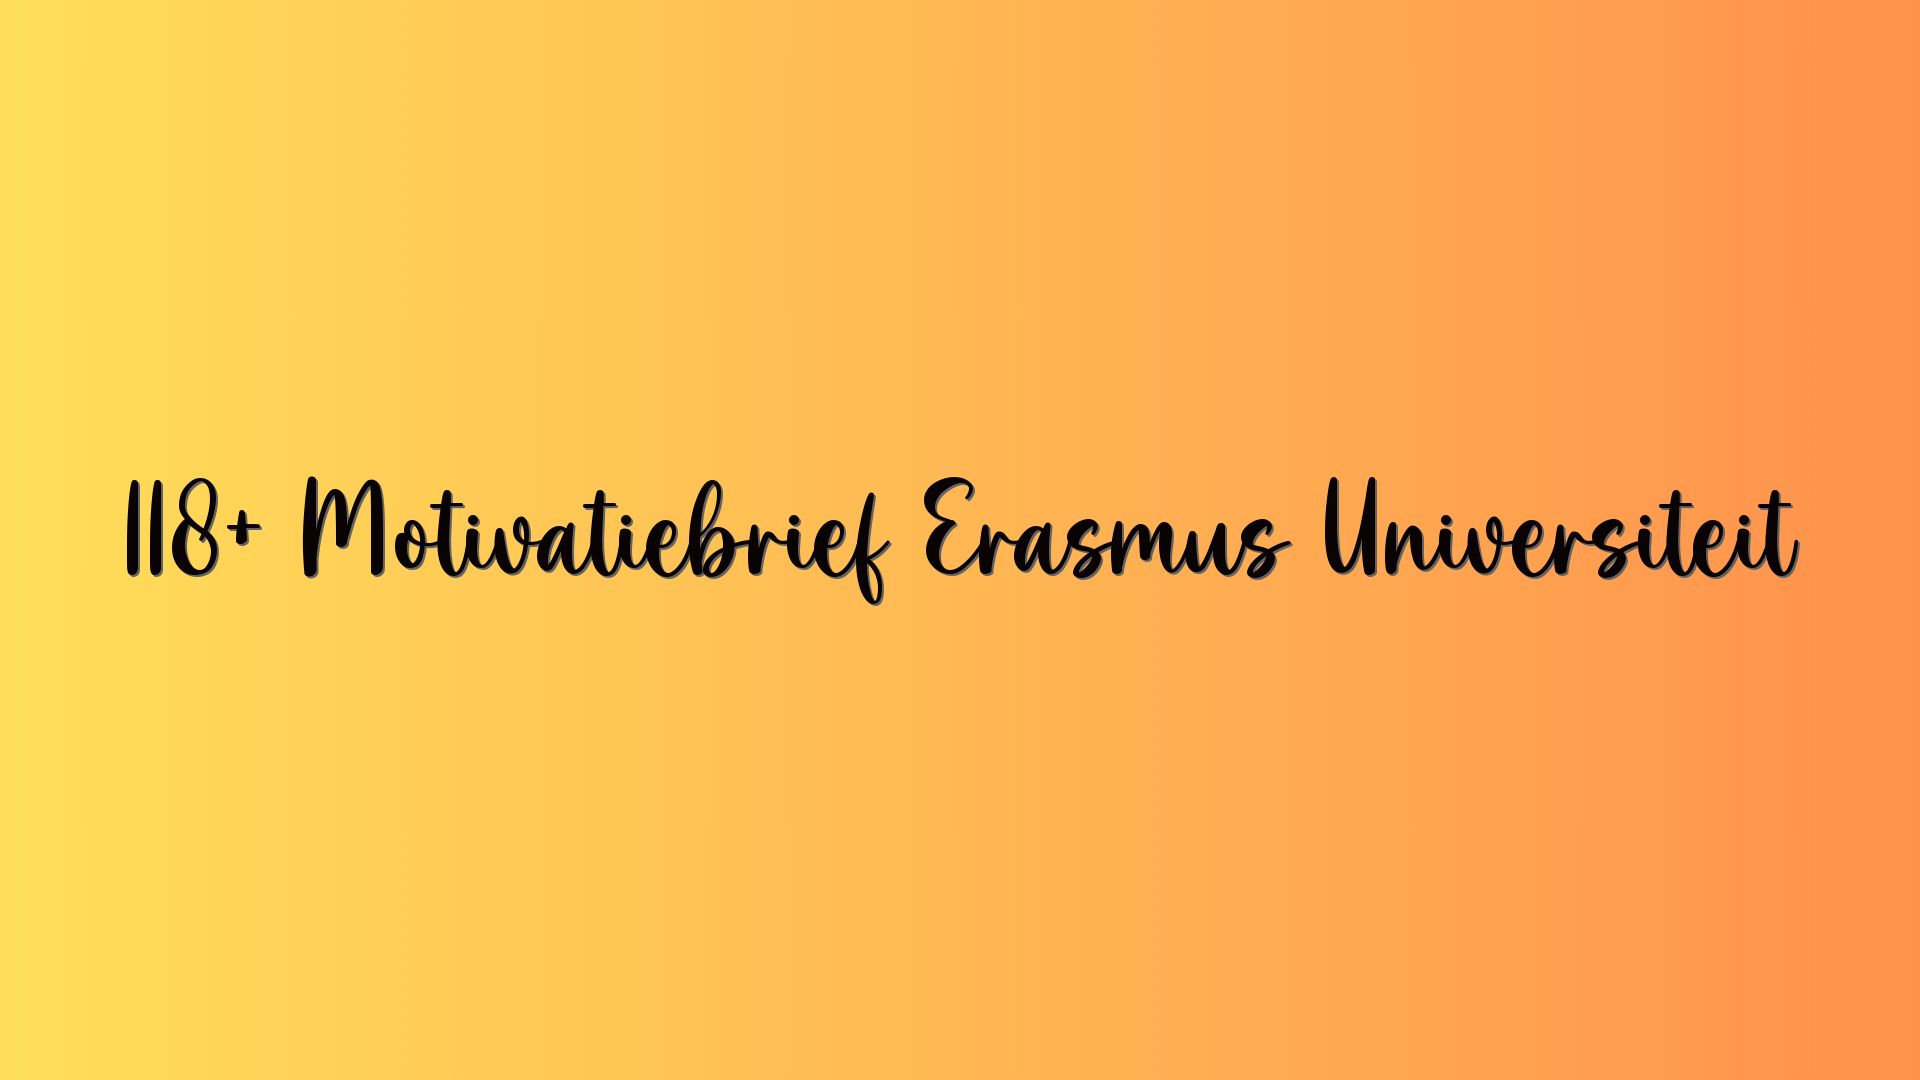 118+ Motivatiebrief Erasmus Universiteit